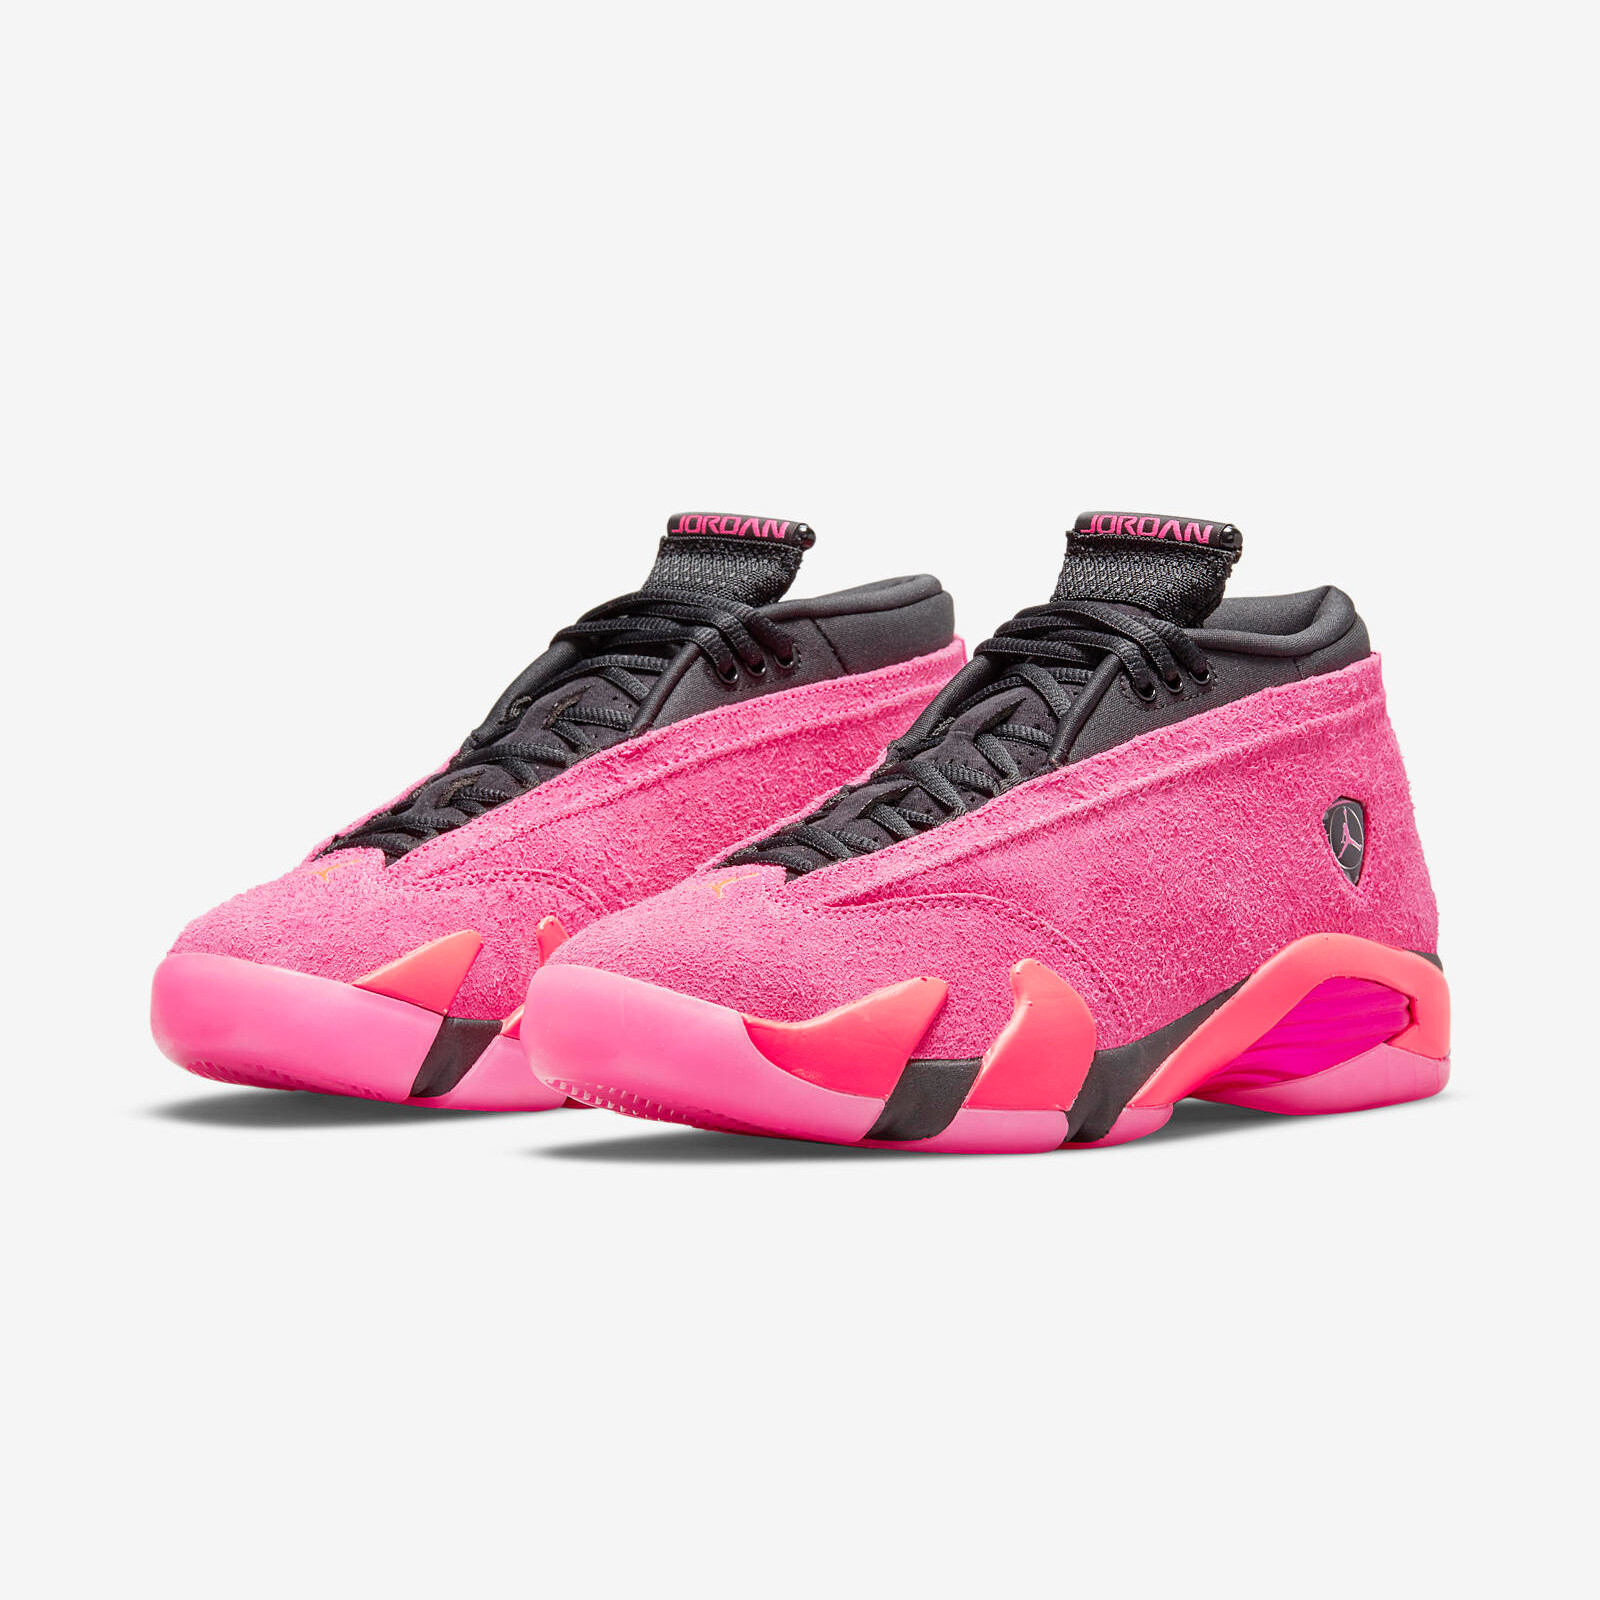 Air Jordan 14 Low
« Shocking Pink »